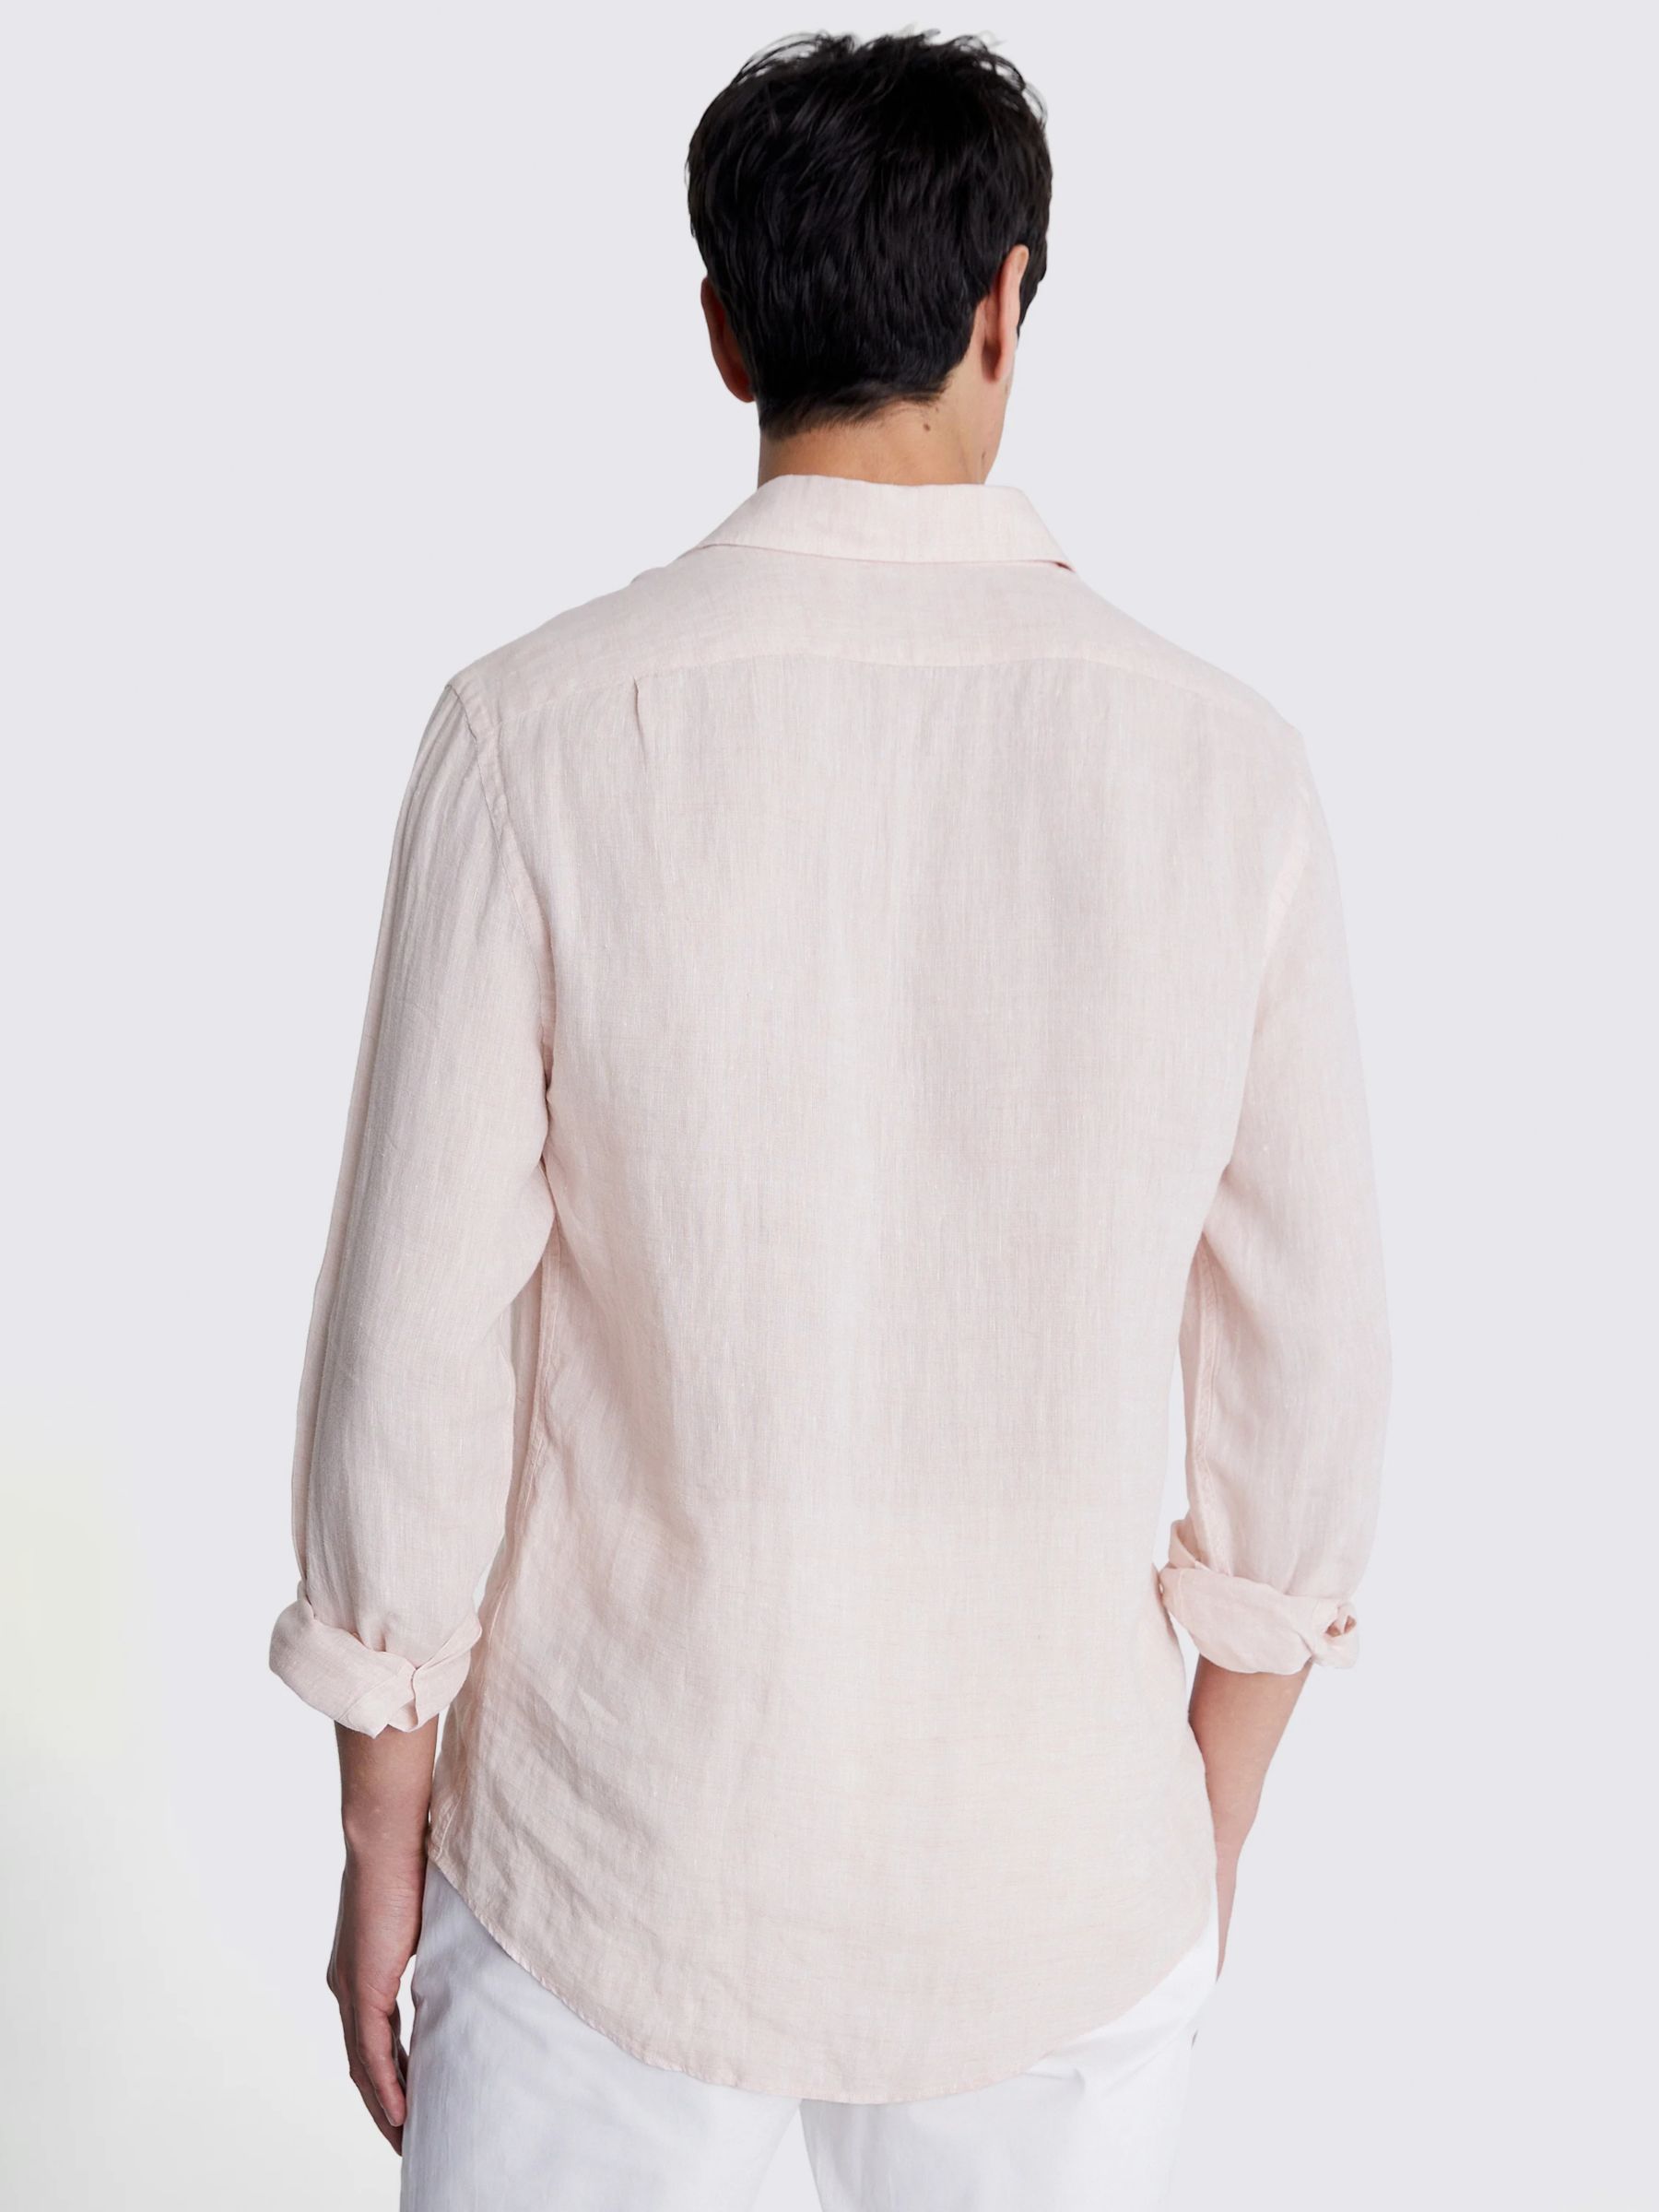 Moss Tailored Fit Linen Long Sleeve Shirt, Pink, S